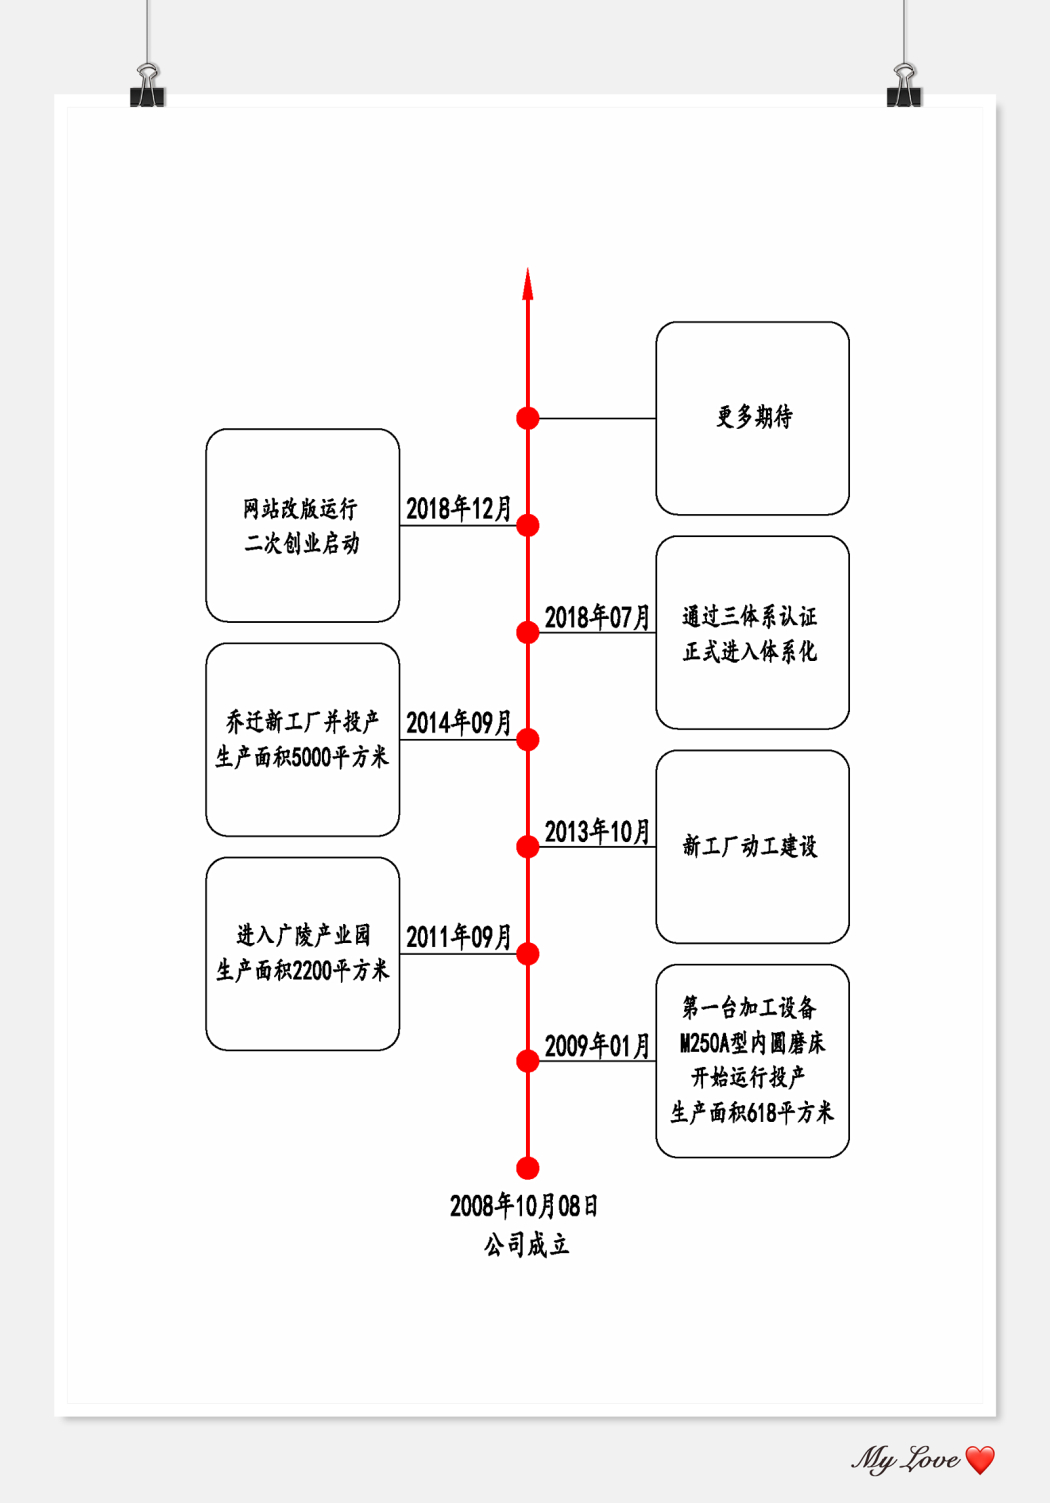 企业发展历程-中文-红色.jpg